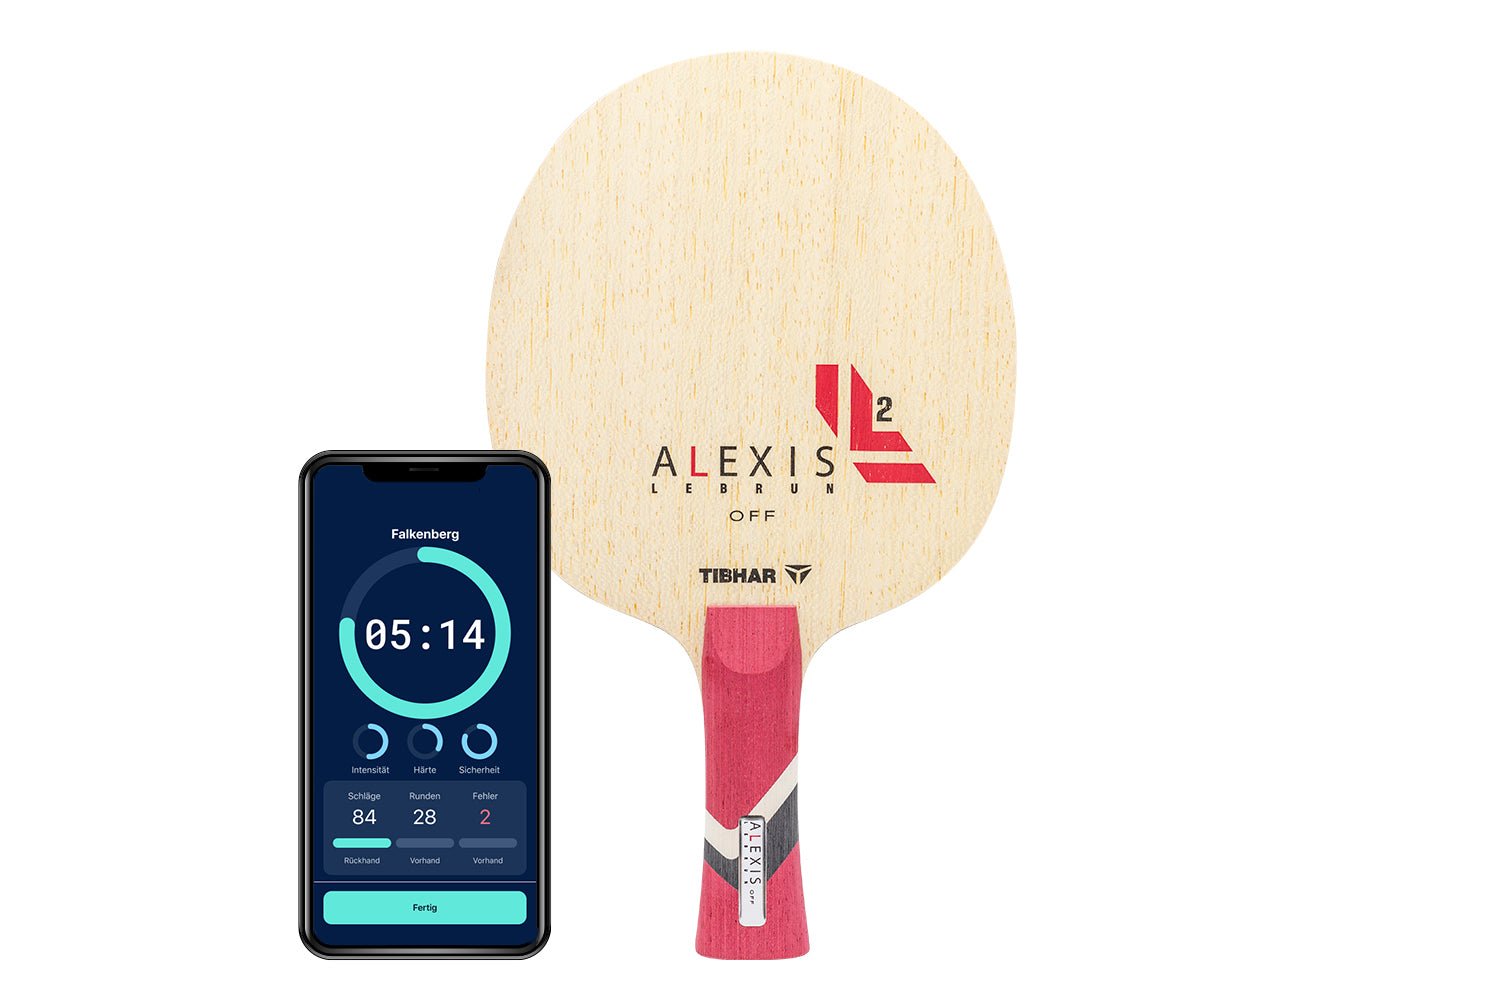 Tibhar Alexis Lebrun Off Tischtennisschläger mit konkaven Griff und Smartphone zeigt Daten des Schlägers vor weißem Hintergrund